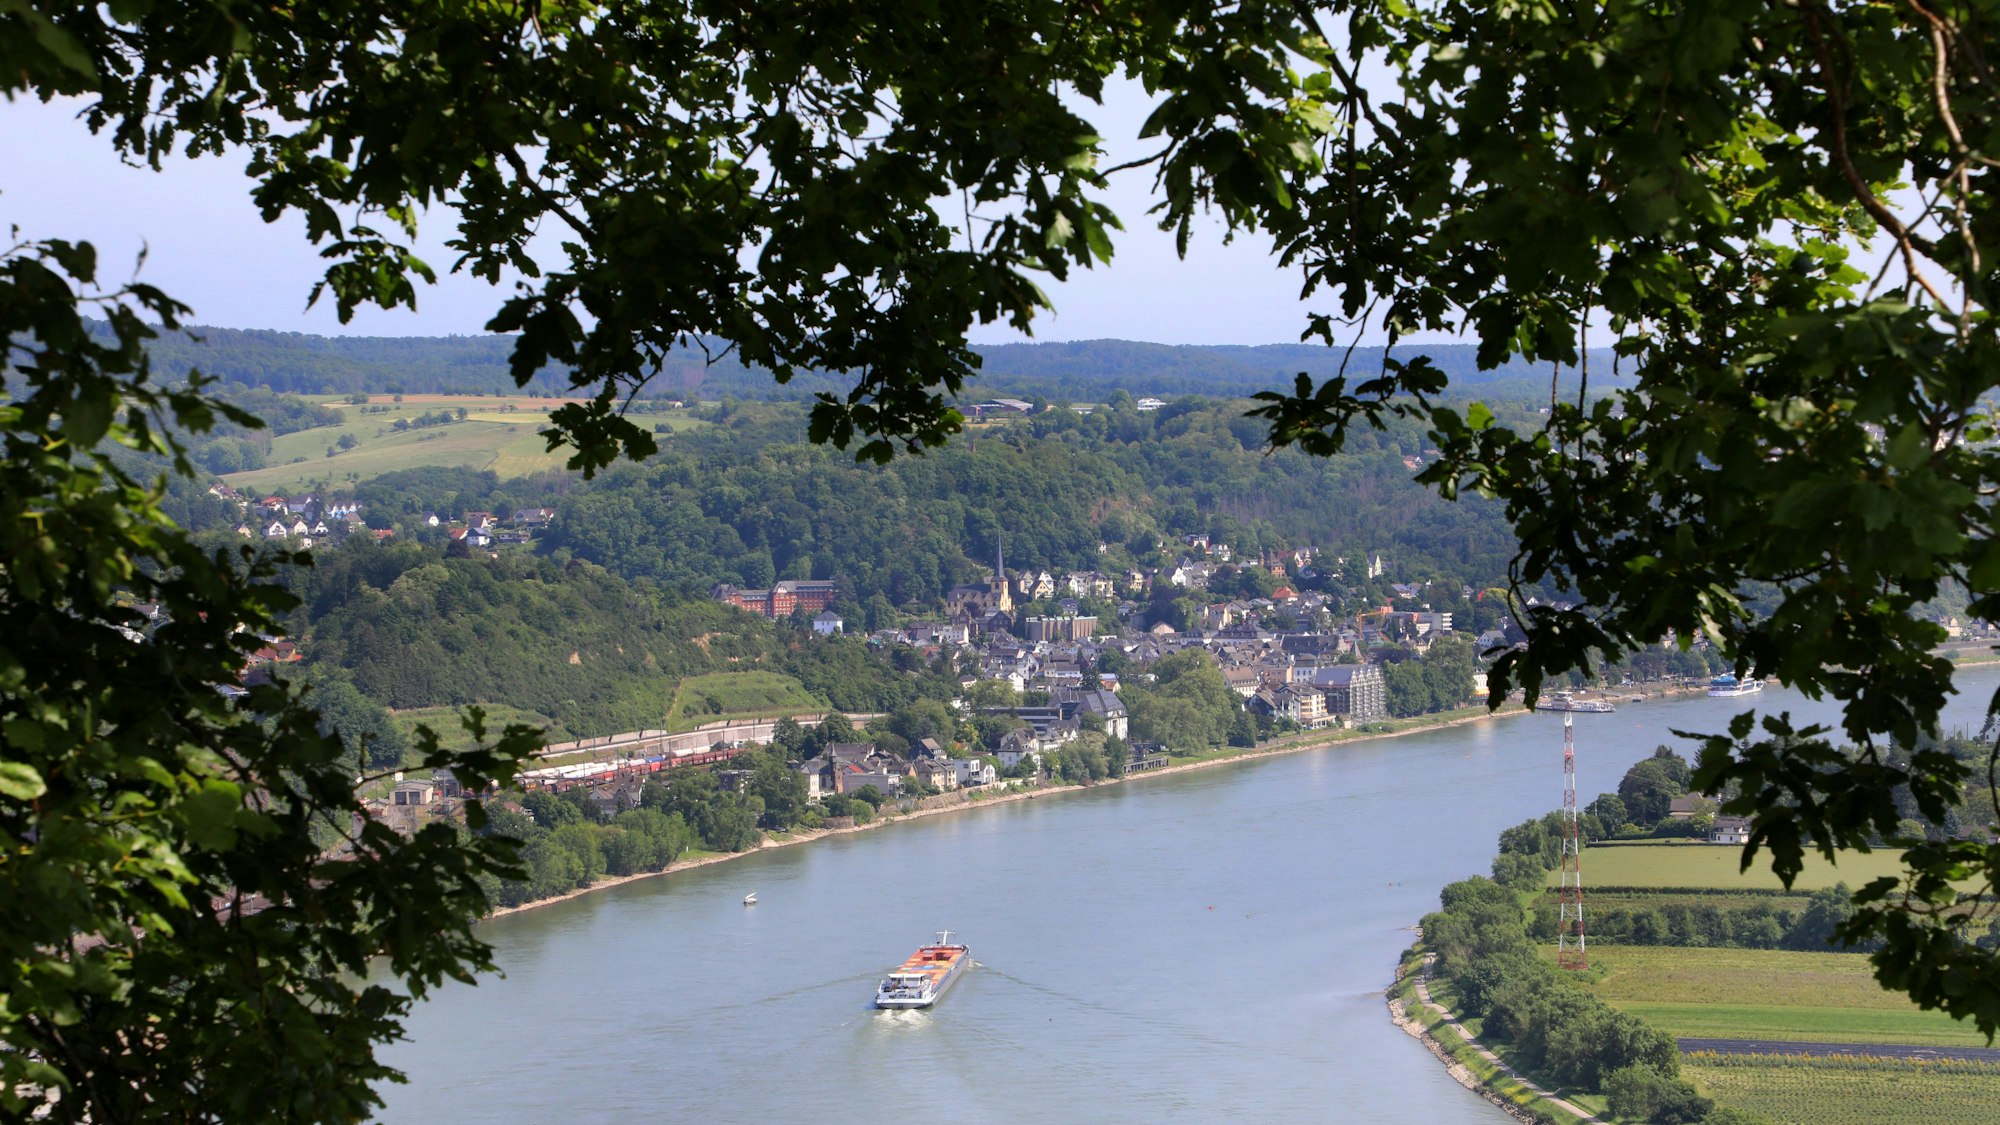 Im Siebengebirge lockt auch immer wieder der Blick auf den Rhein.

